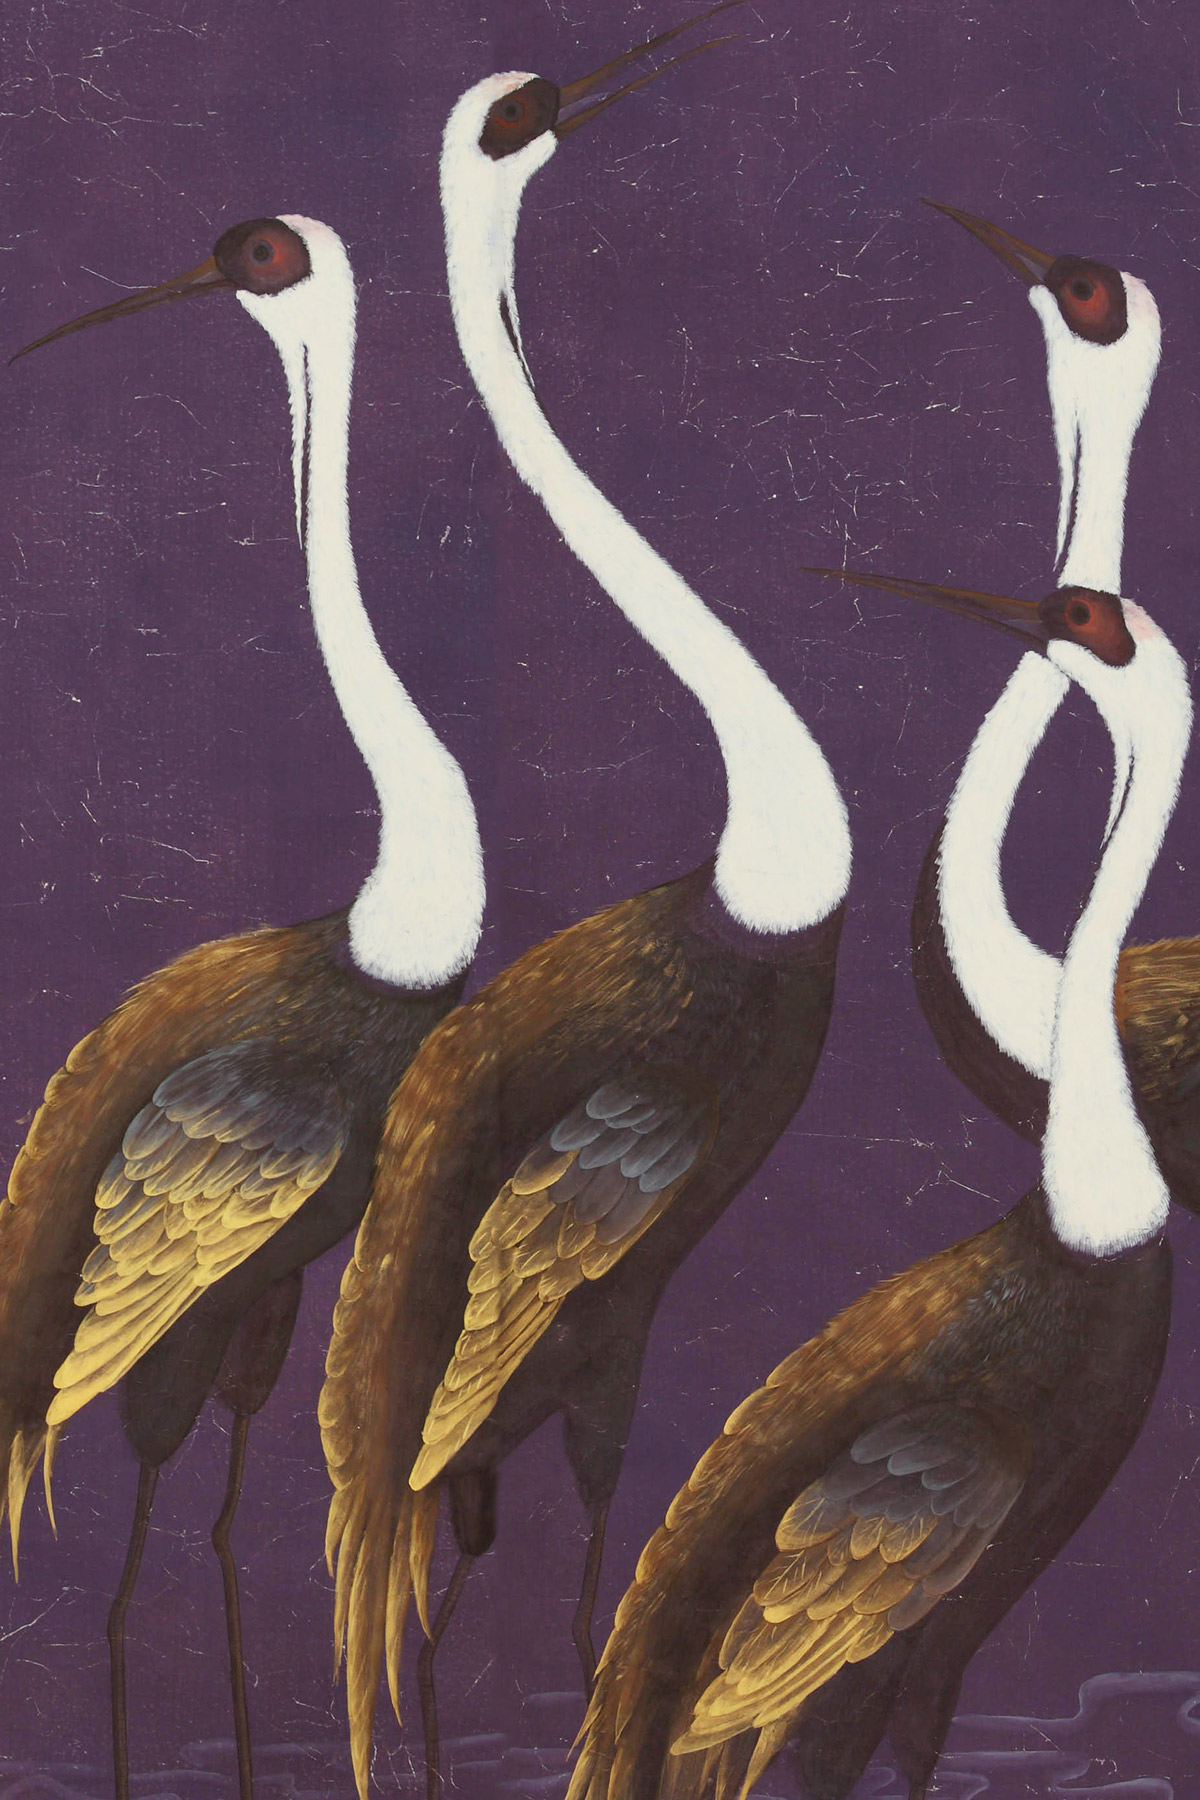 Sarus Cranes